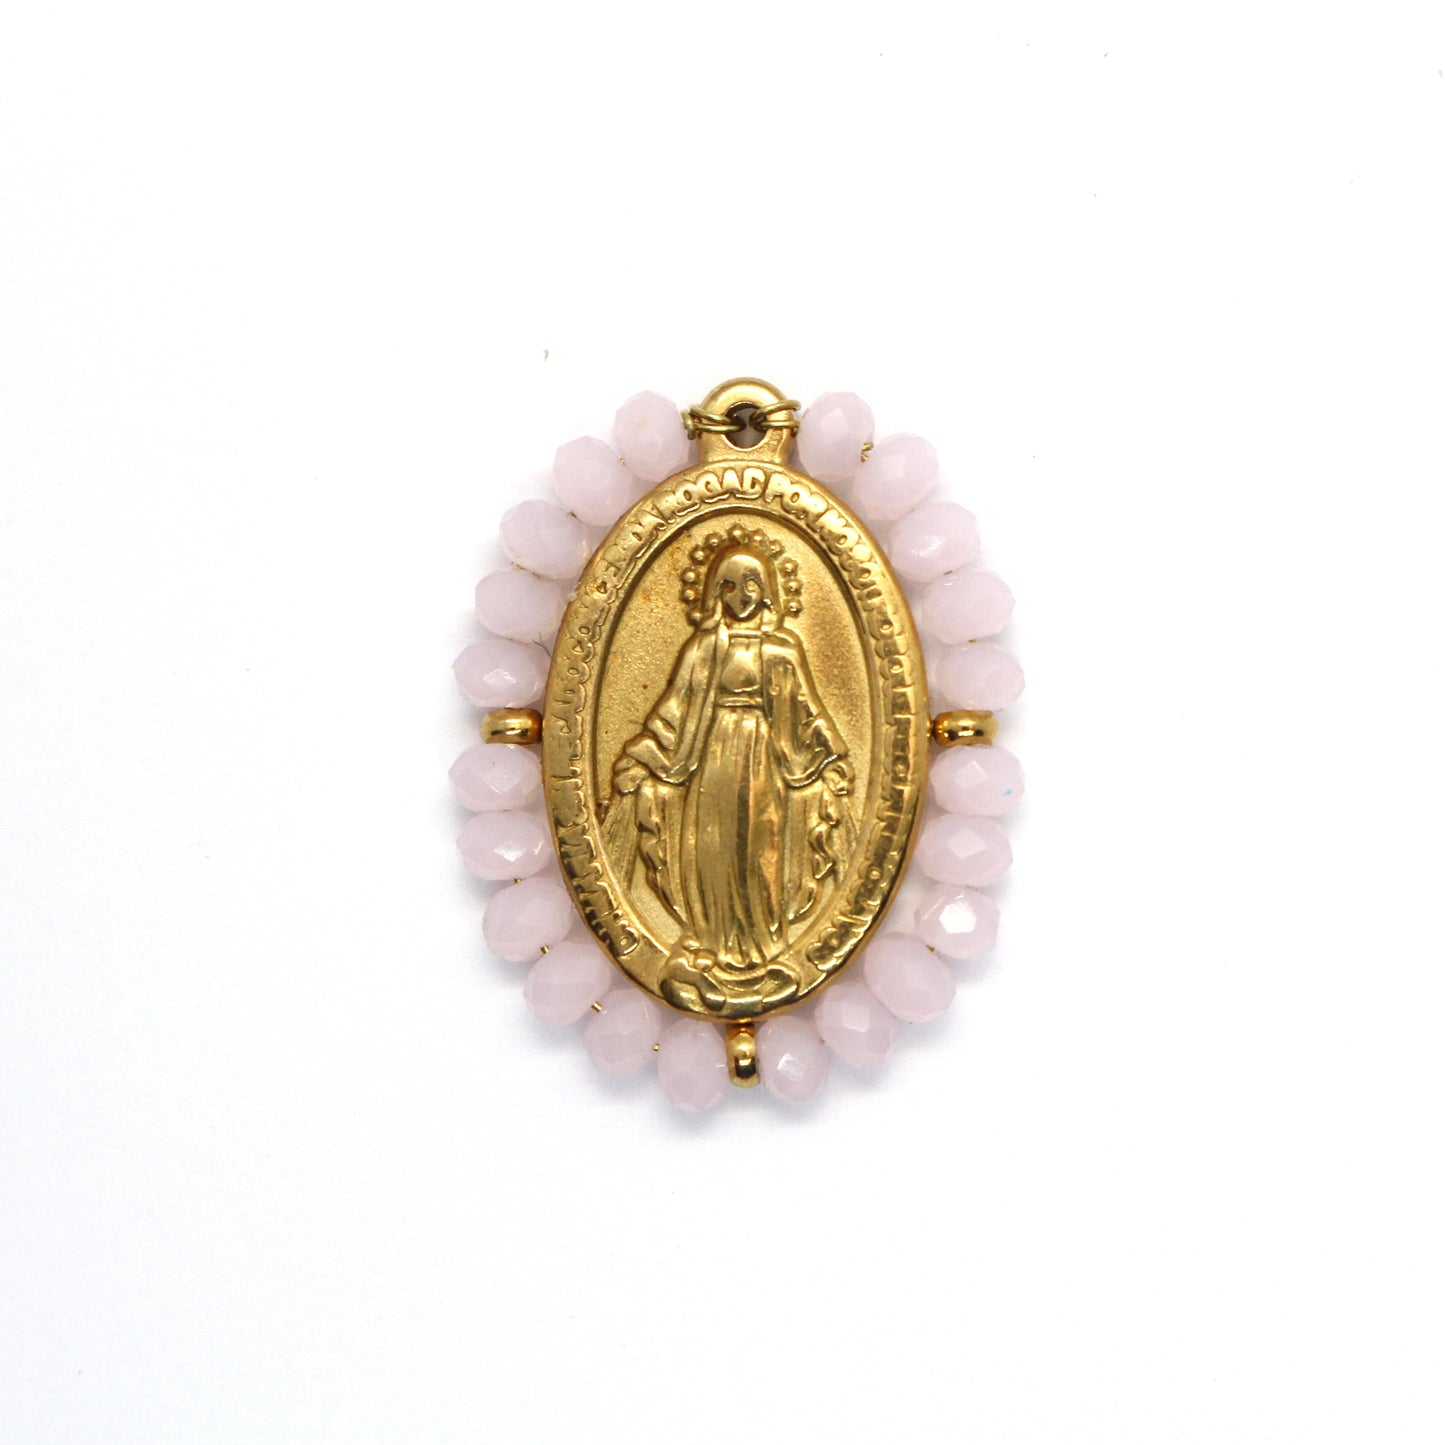 Pendente Nossa Senhora de Guadalupe 25mm x 19mm (Cristais Facetado Cor de Rosa Claro Fosco) - Aço Inox